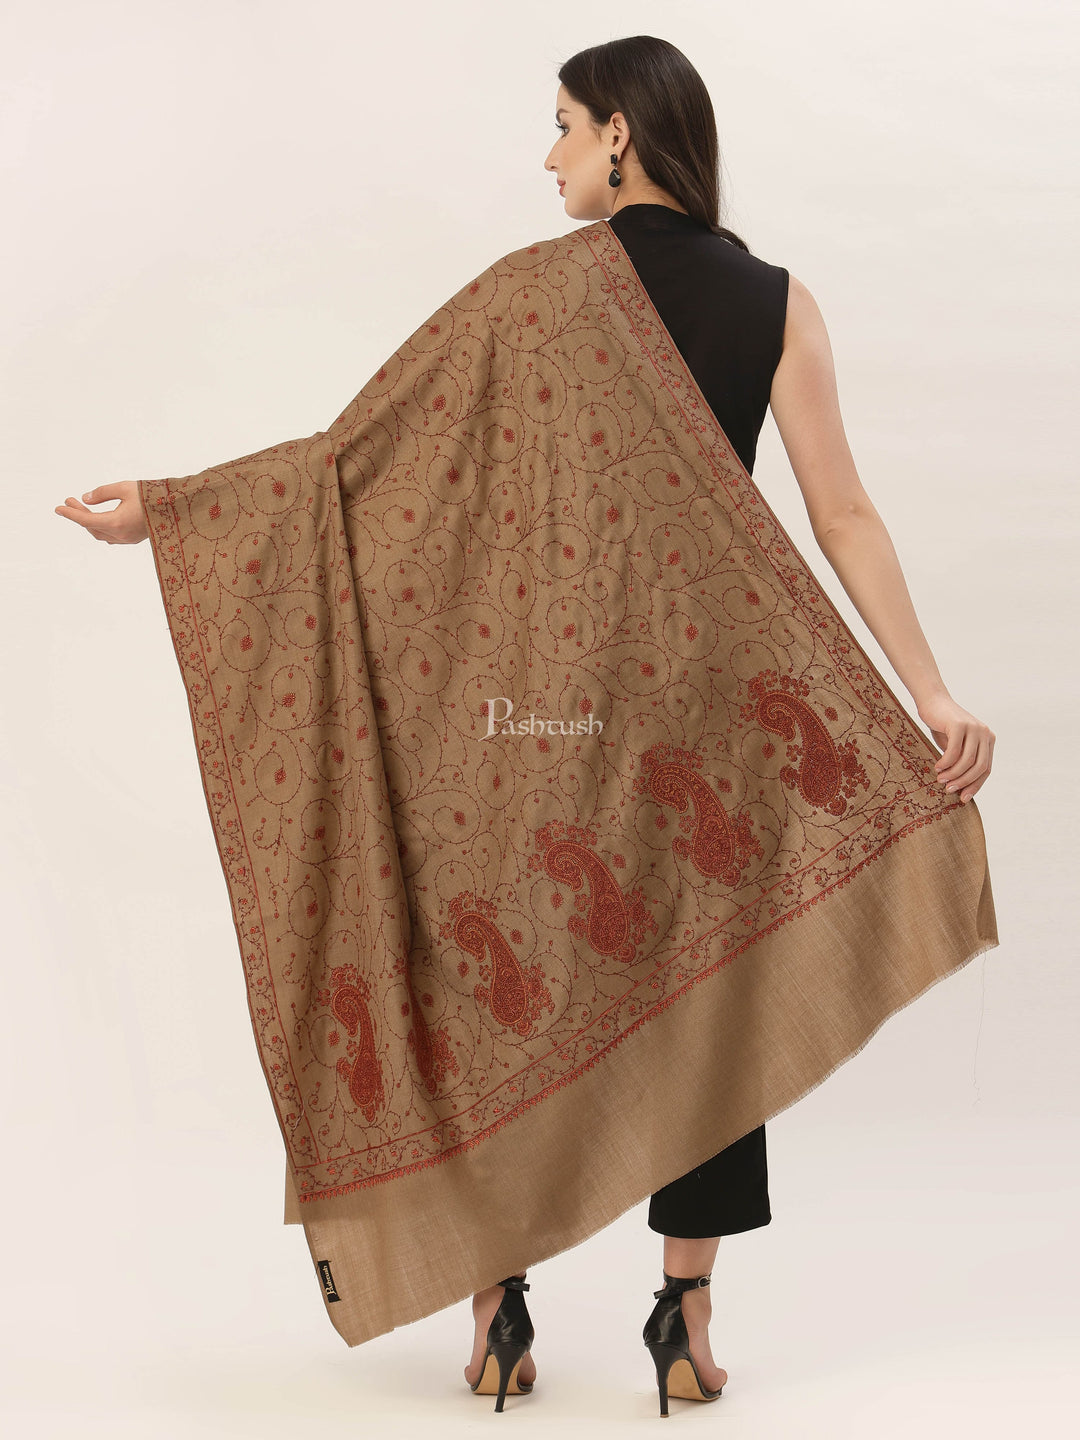 Pashtush India Womens Shawls Pashtush Womens Jaal Embroidery Shawl, Large Size, Taupe